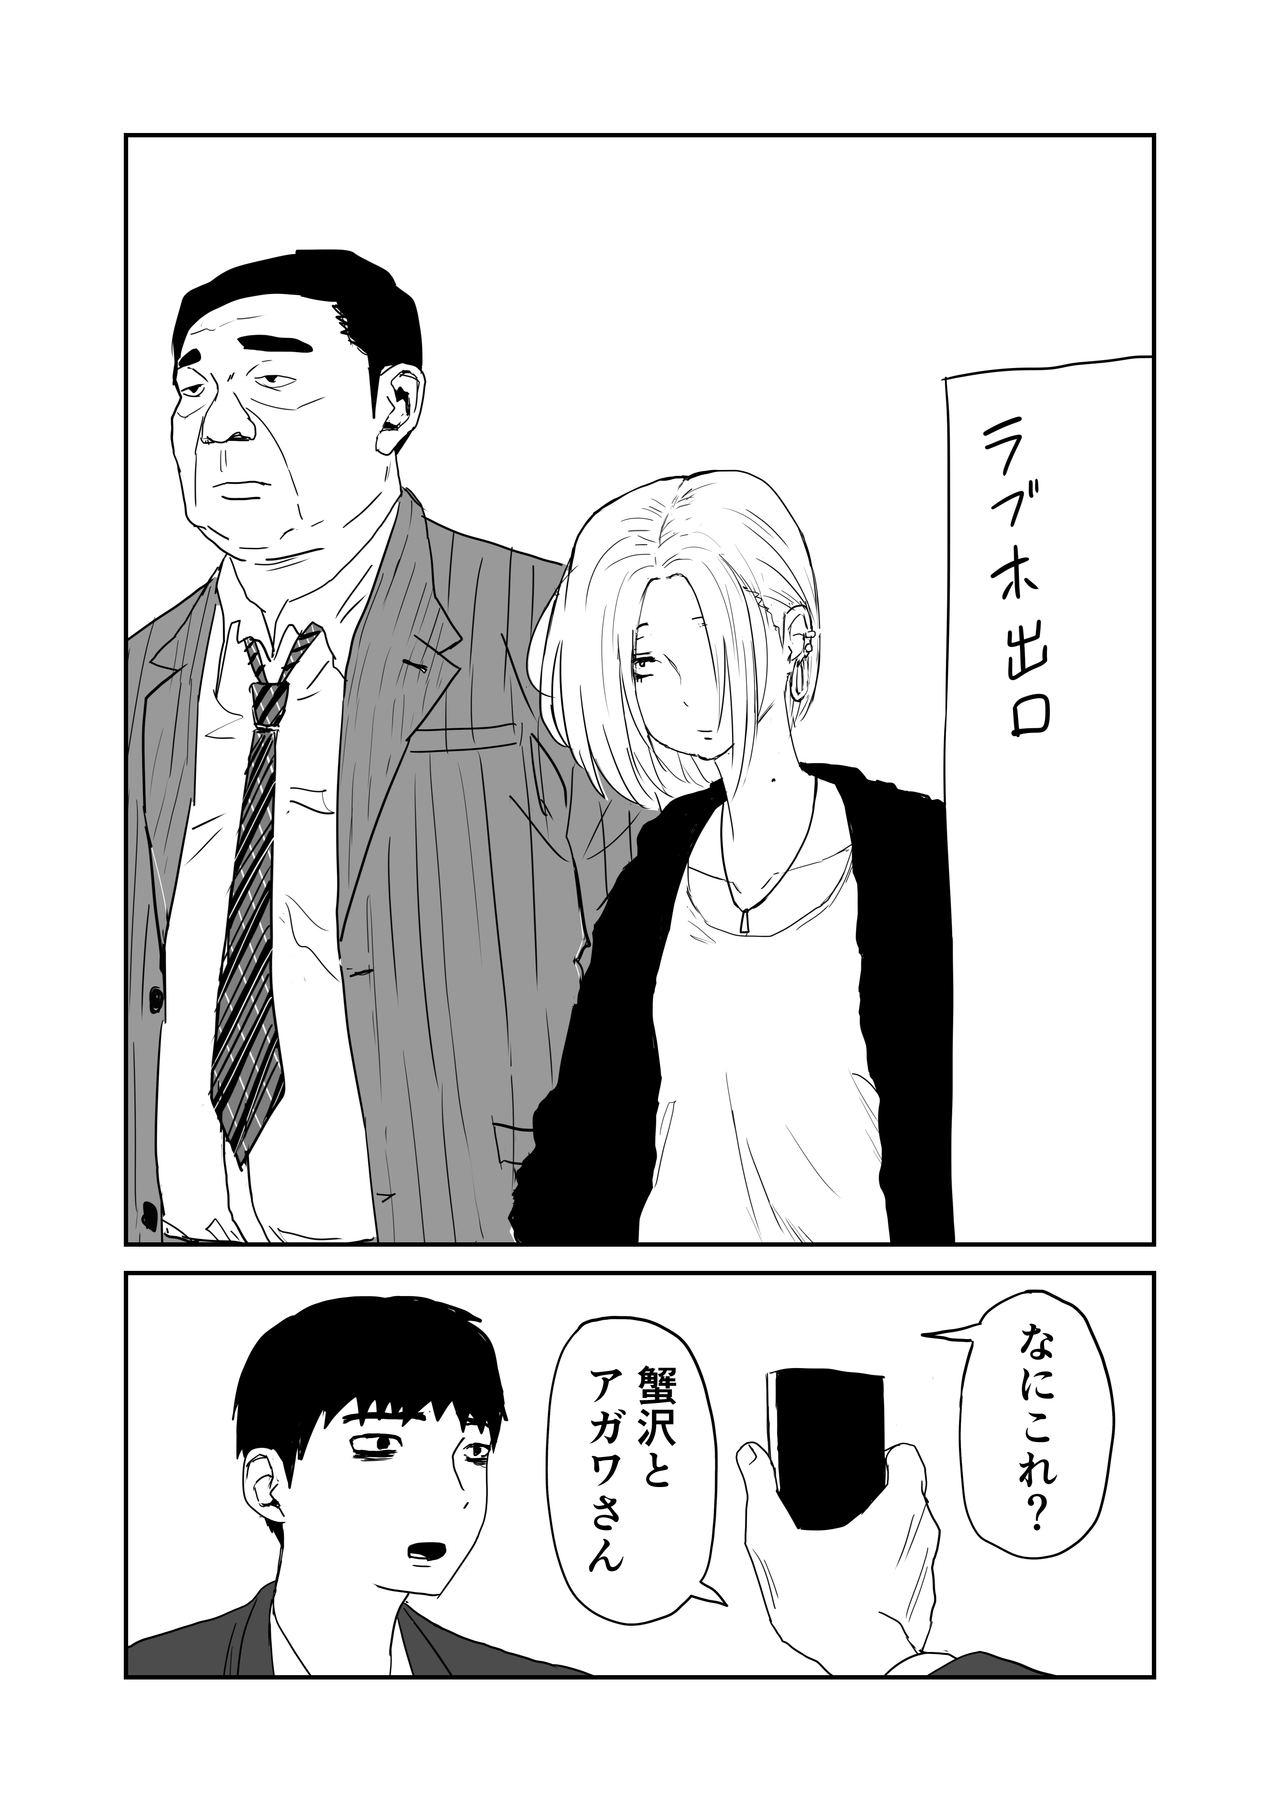 女子高生のエロ漫画 8